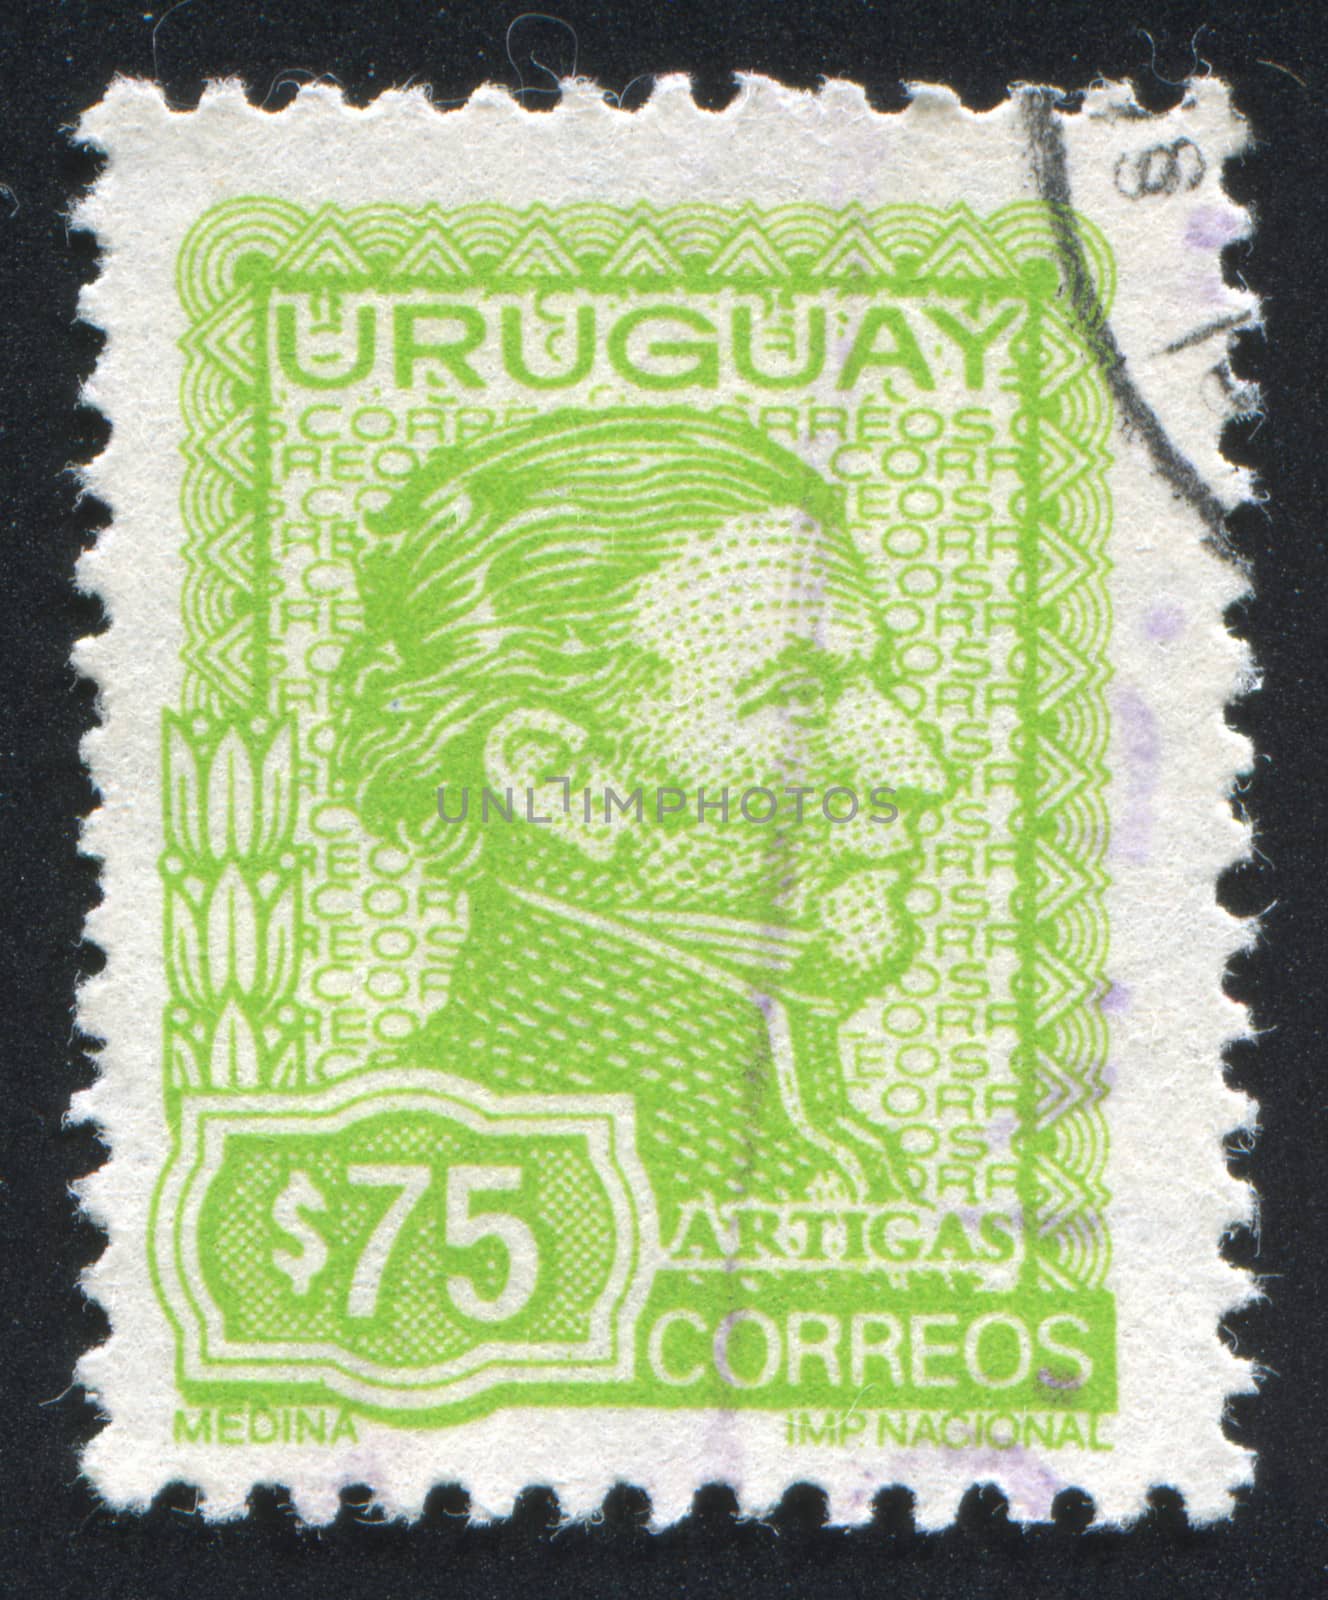 Jose Gervasio Artigas by rook